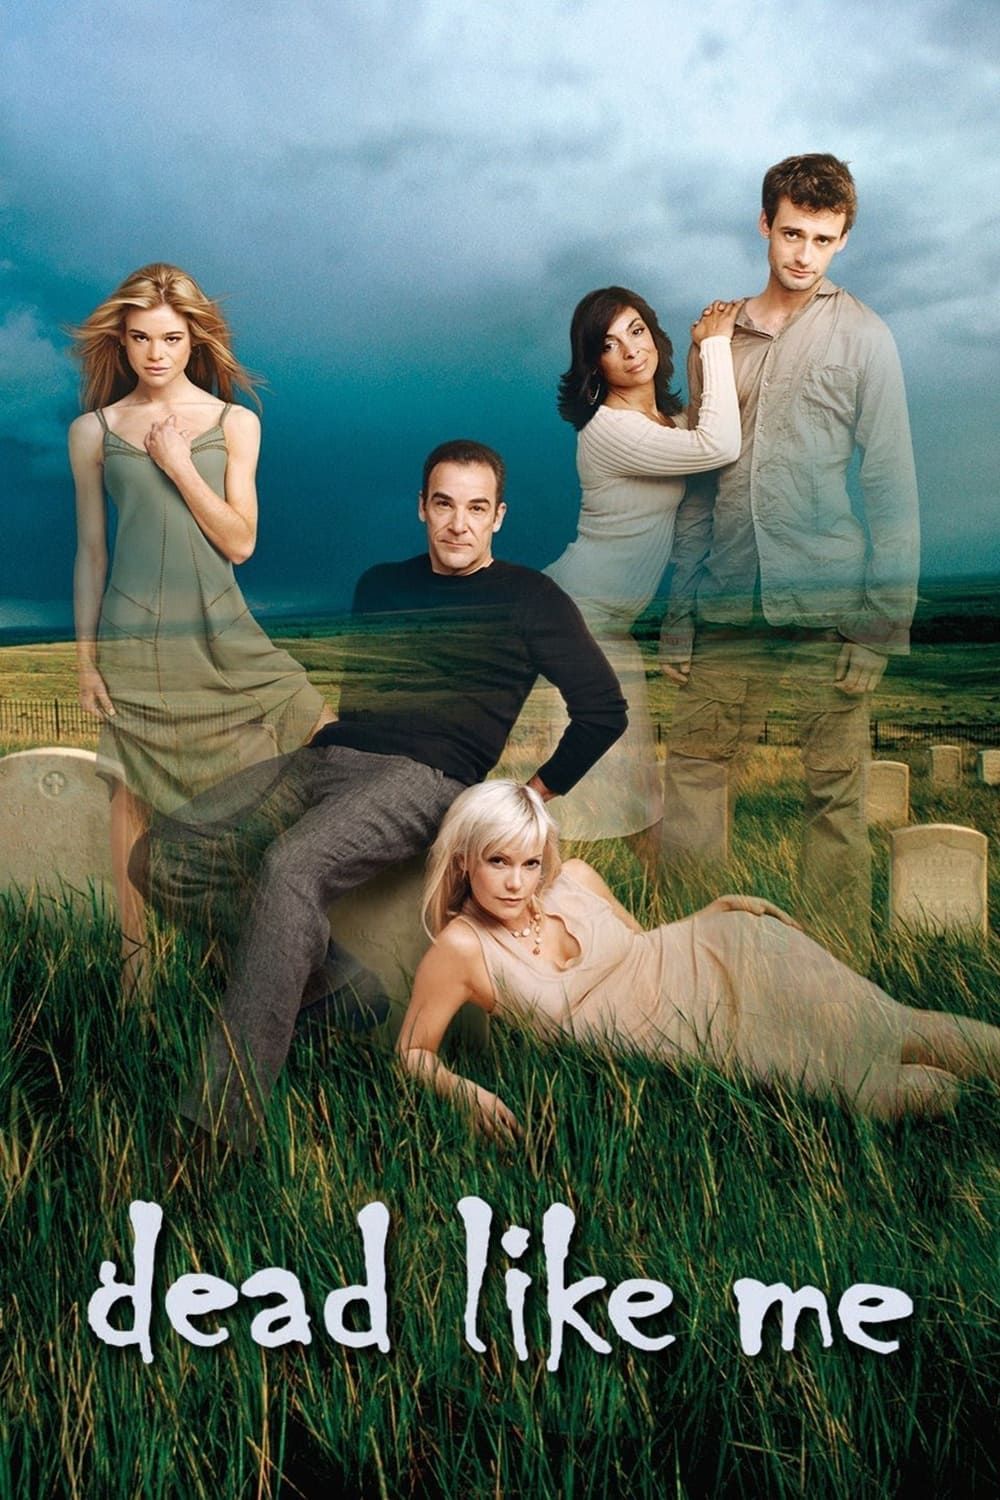 Watch Dead Like Me (2003) TV Series Free Online - Plex